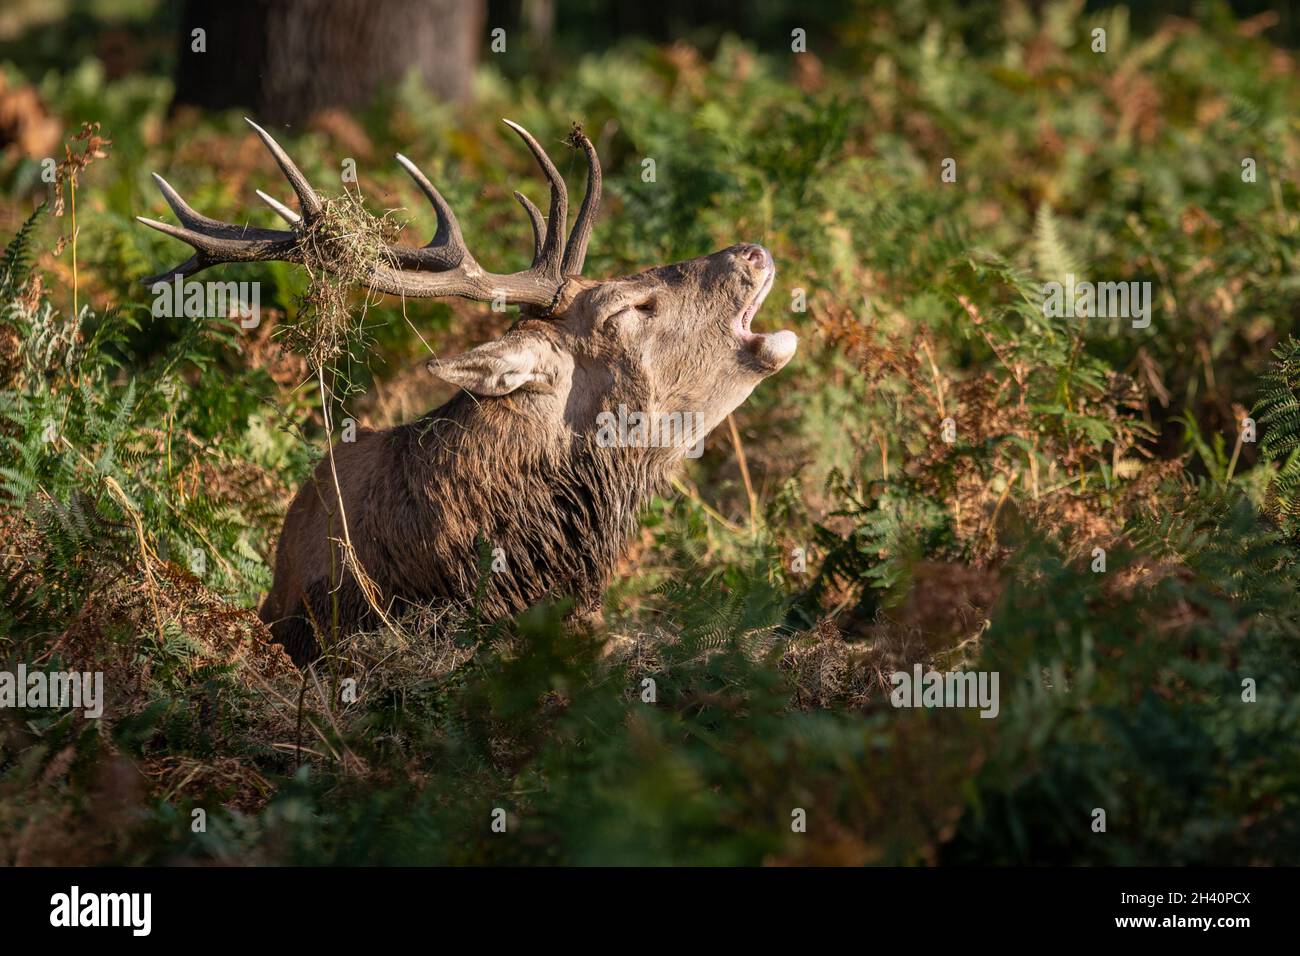 Red Deer Stag in Bracken, Bellowing Stock Photo